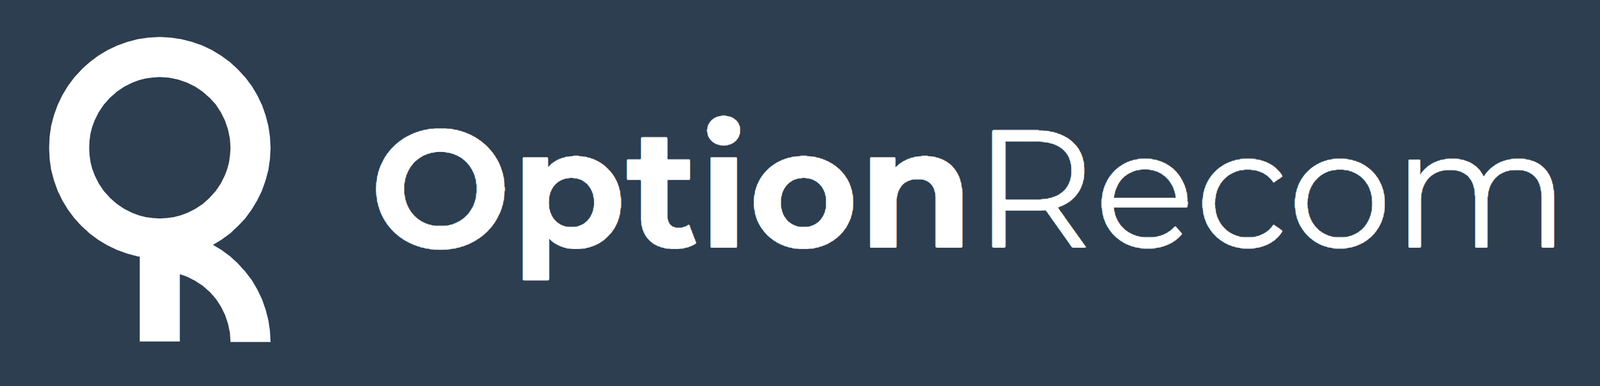 OptionRecom logo